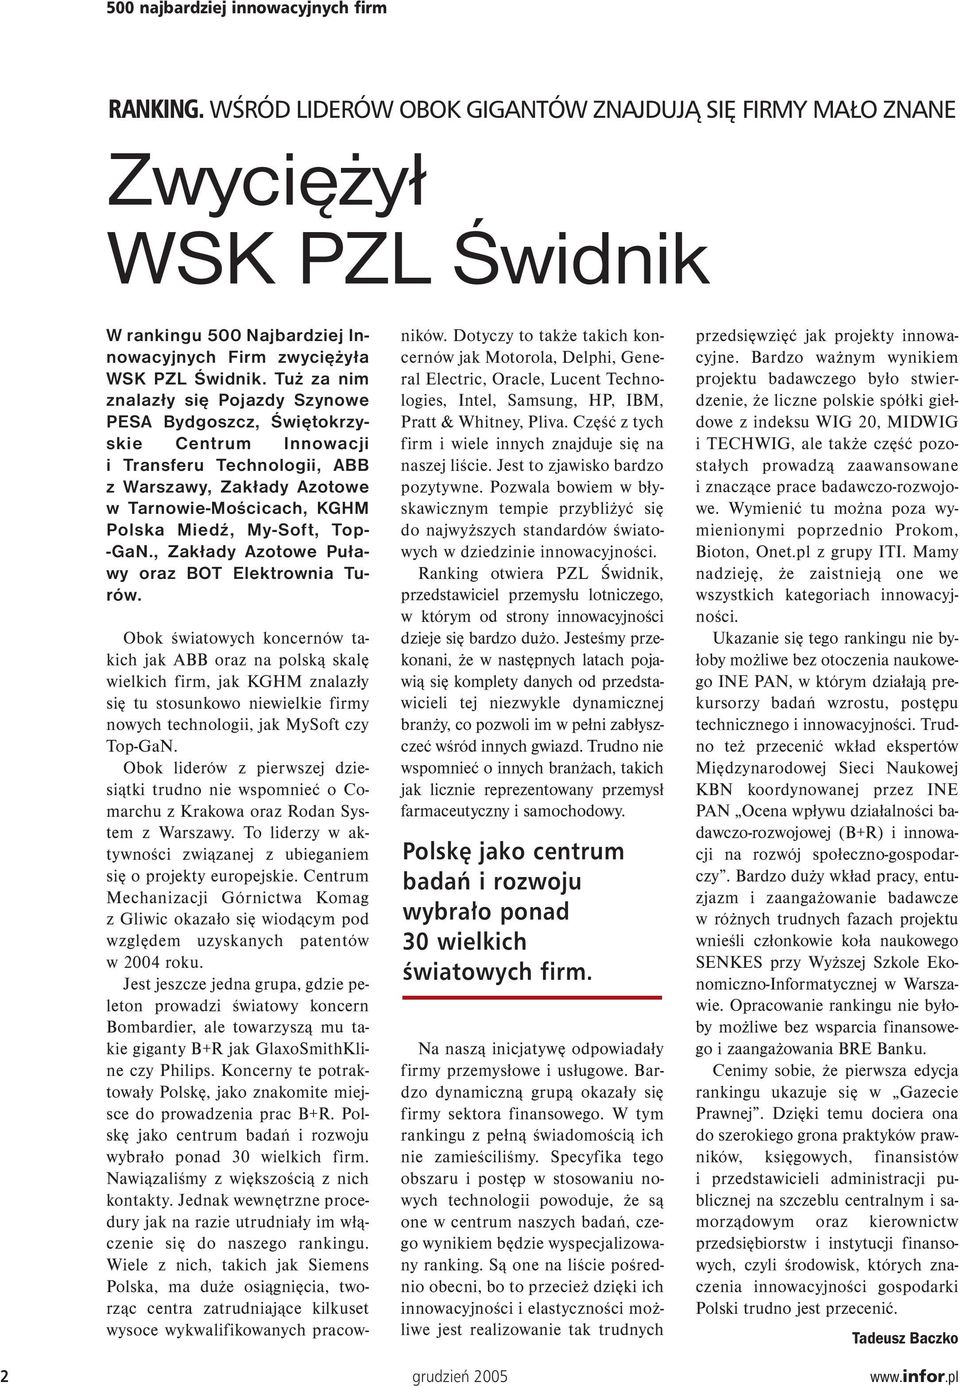 Top- -Ga., Zakłady Azotowe Puławy oraz BOT Elektrownia Turów.